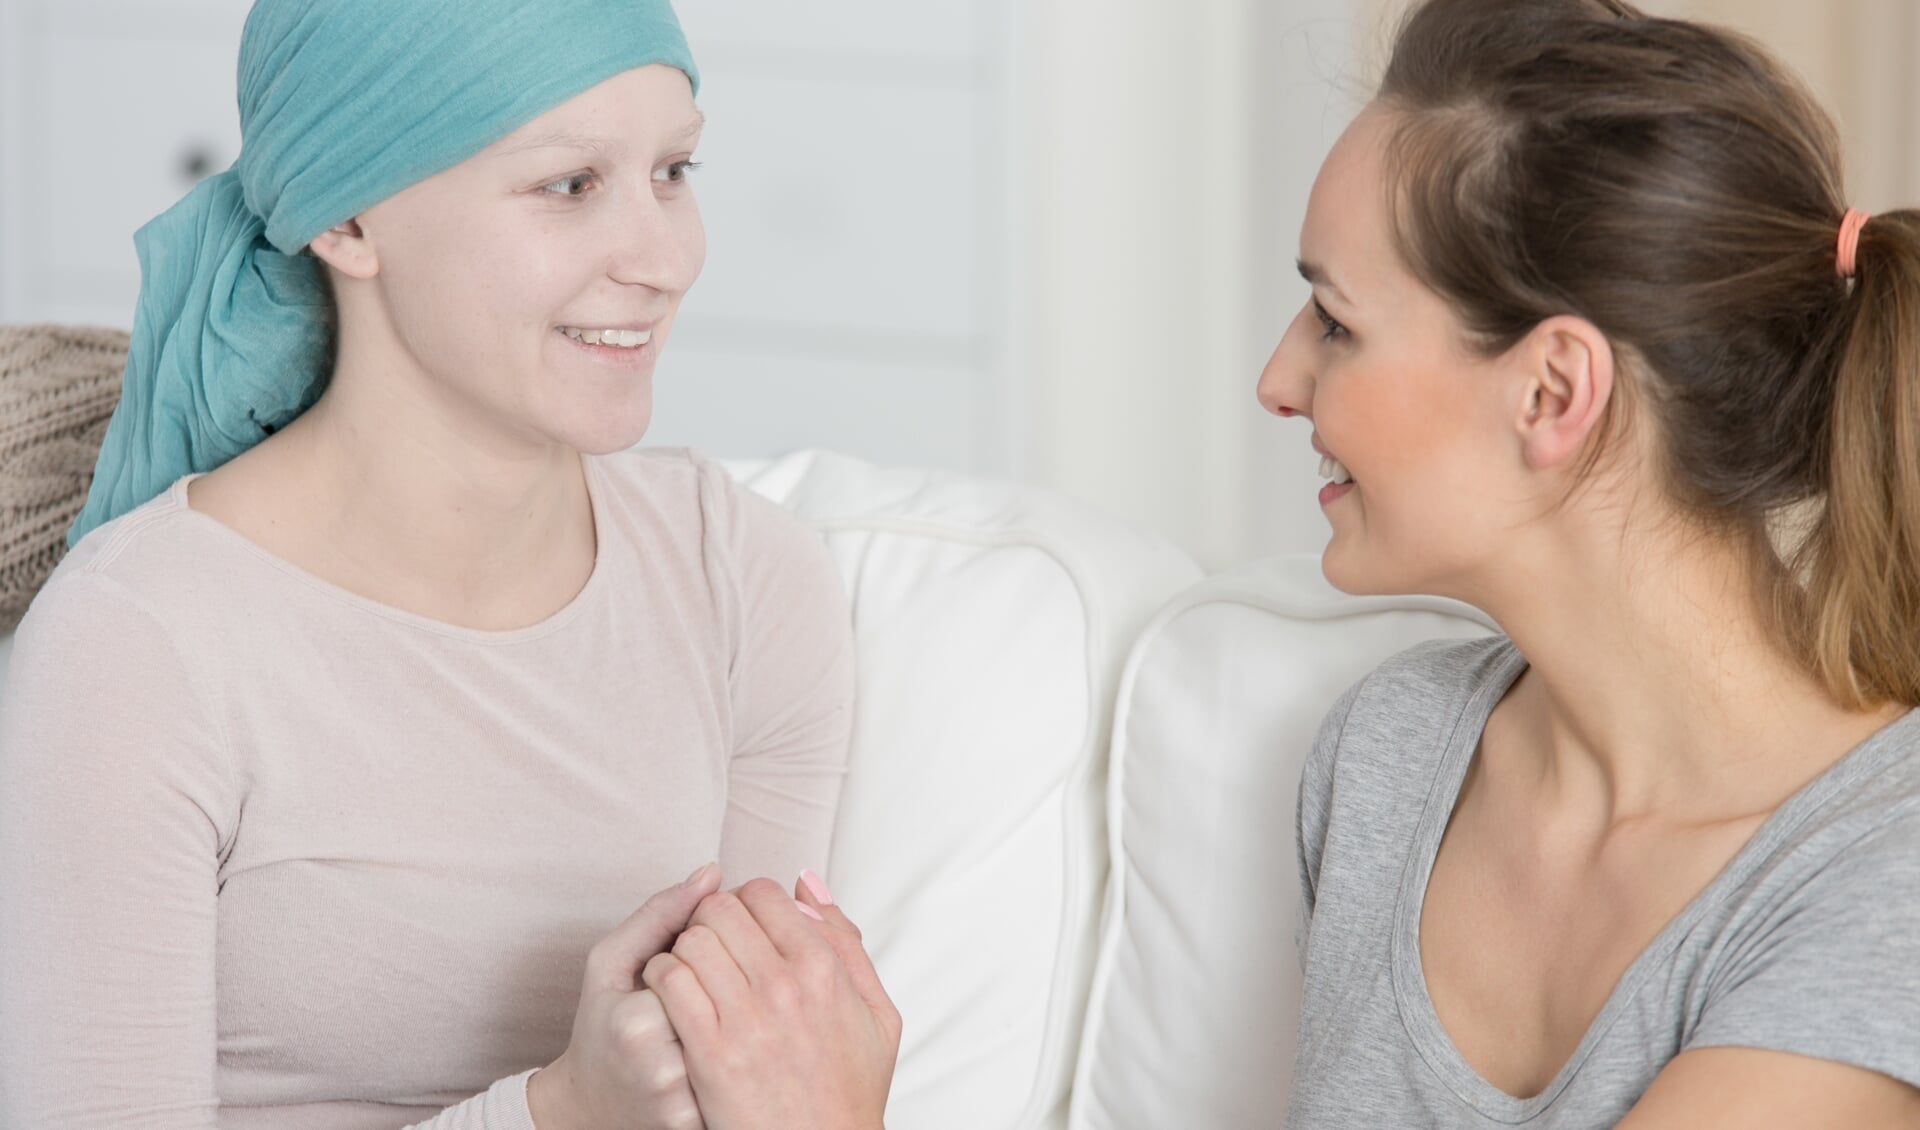 De ziekte kanker heeft veel impact op het leven van een patiënt. Erover praten helpt!